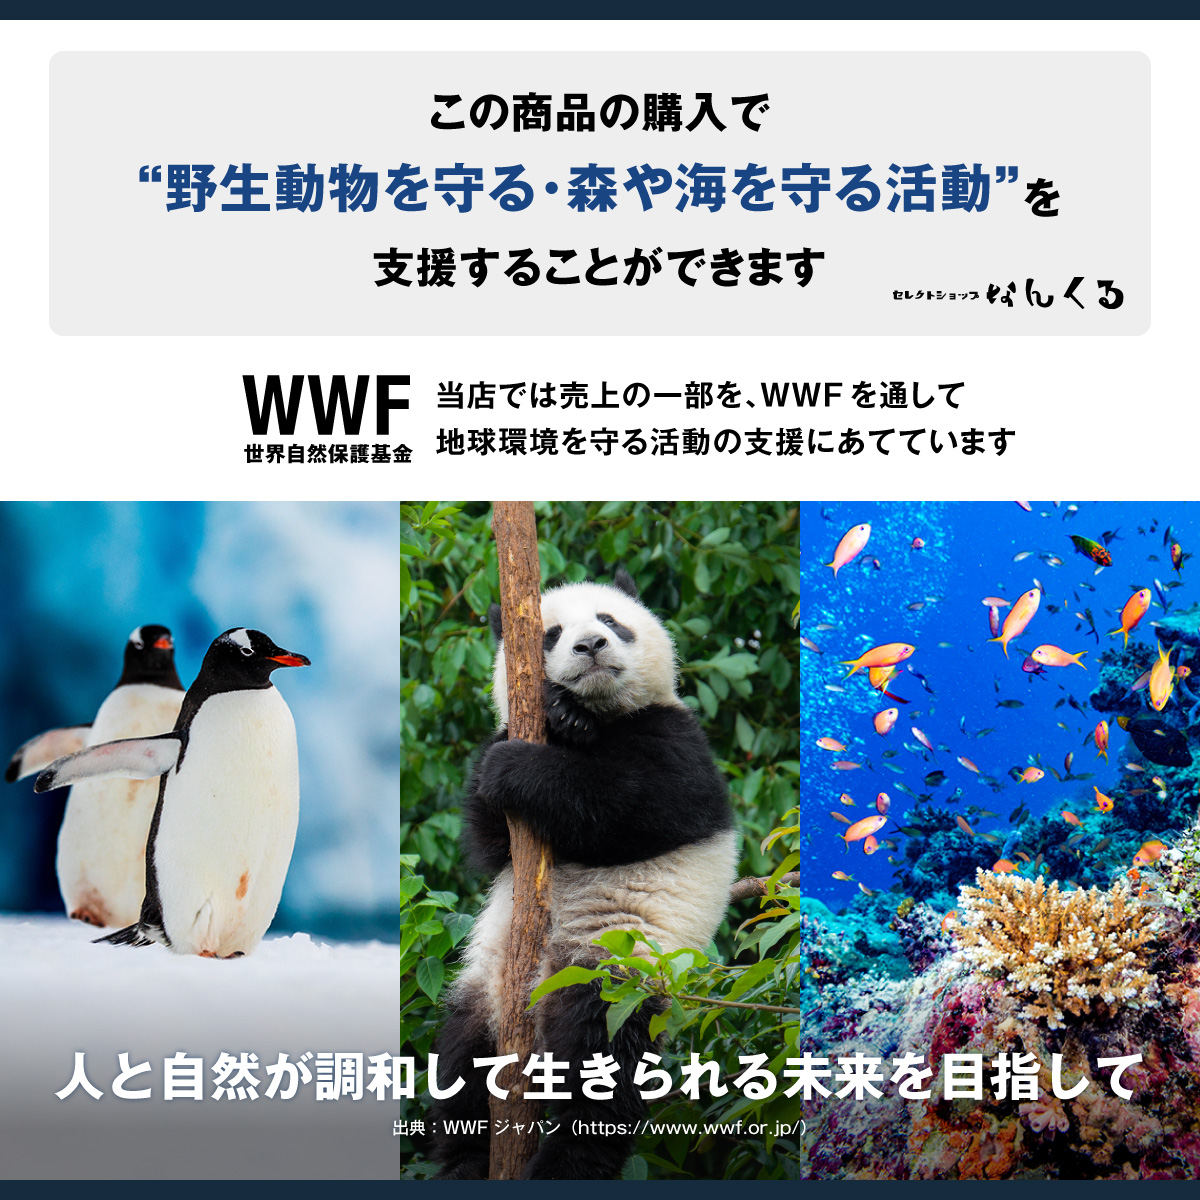 この商品の購入で「野生動物を守る・森や海を守る活動」を支援することができます。WWF 世界自然保護基金 当店では売上の一部を、WWFを通して地球観光を守る活動の支援にあてています